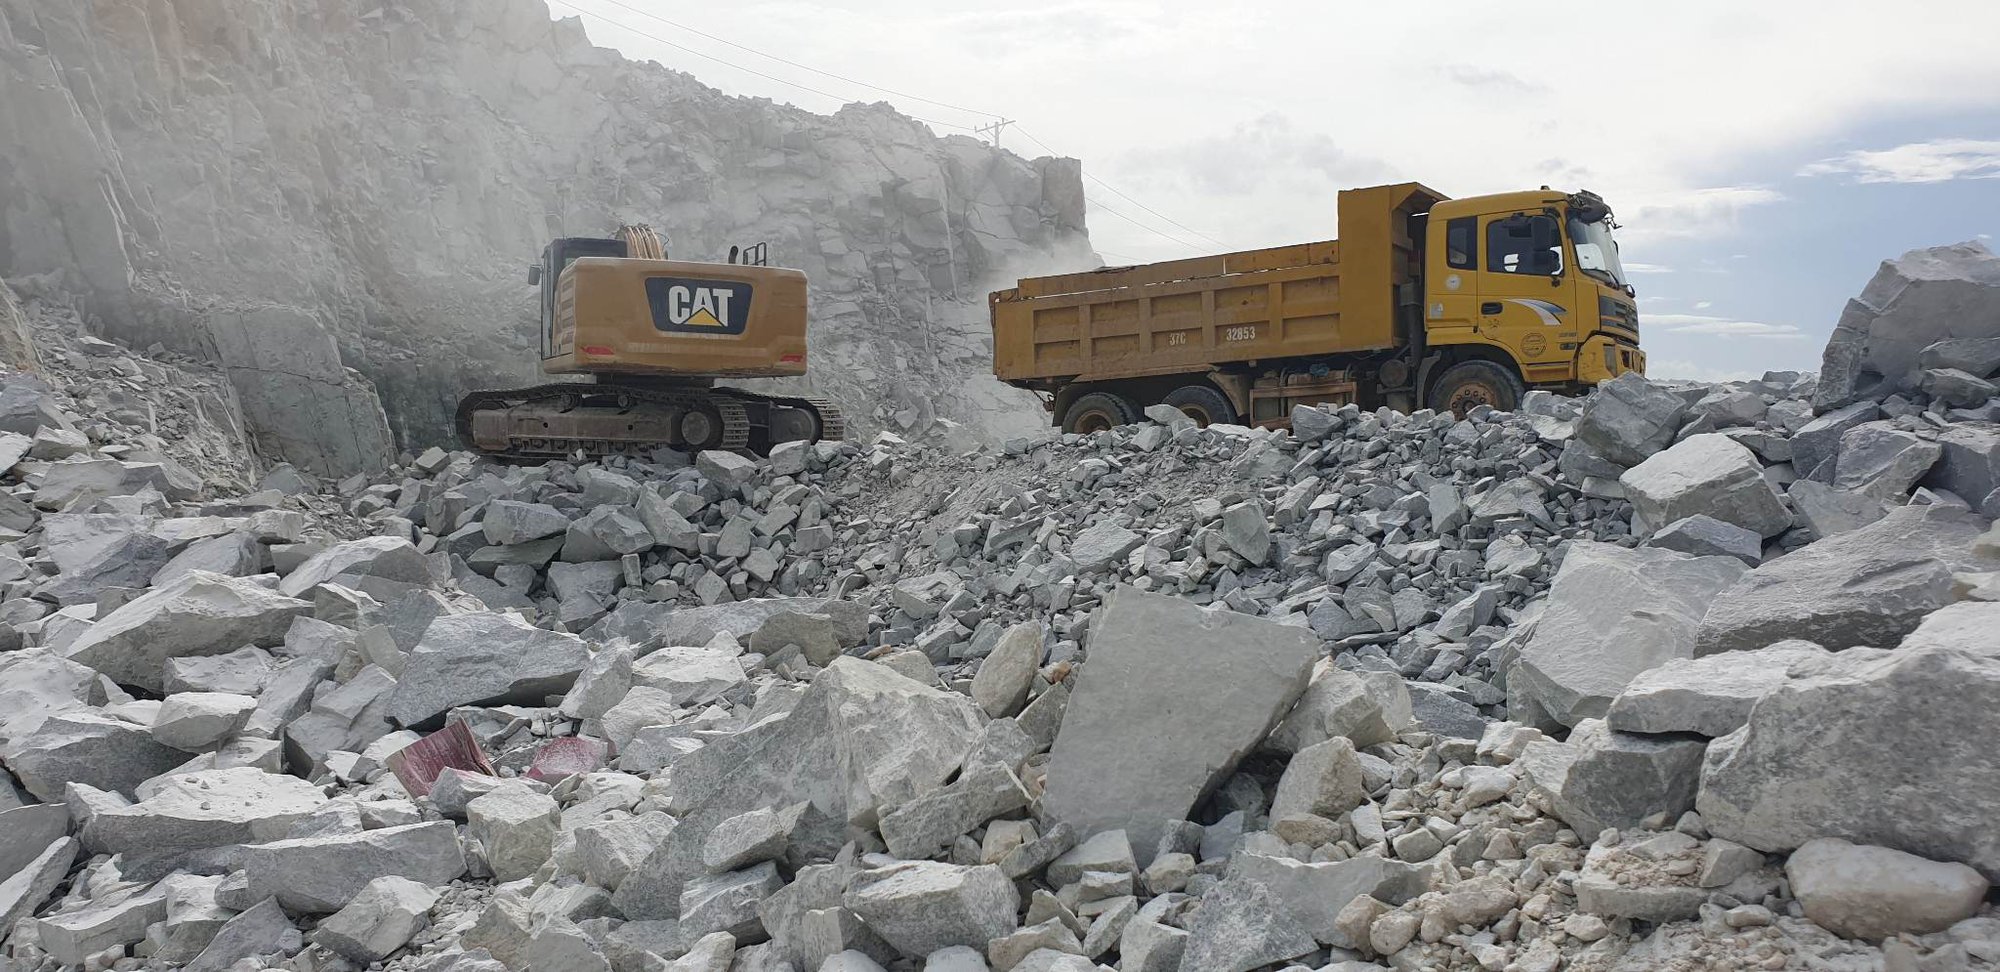 Dự án cao tốc Bắc - Nam: Đẩy nhanh thủ tục khai thác mỏ vật liệu - Ảnh 1.